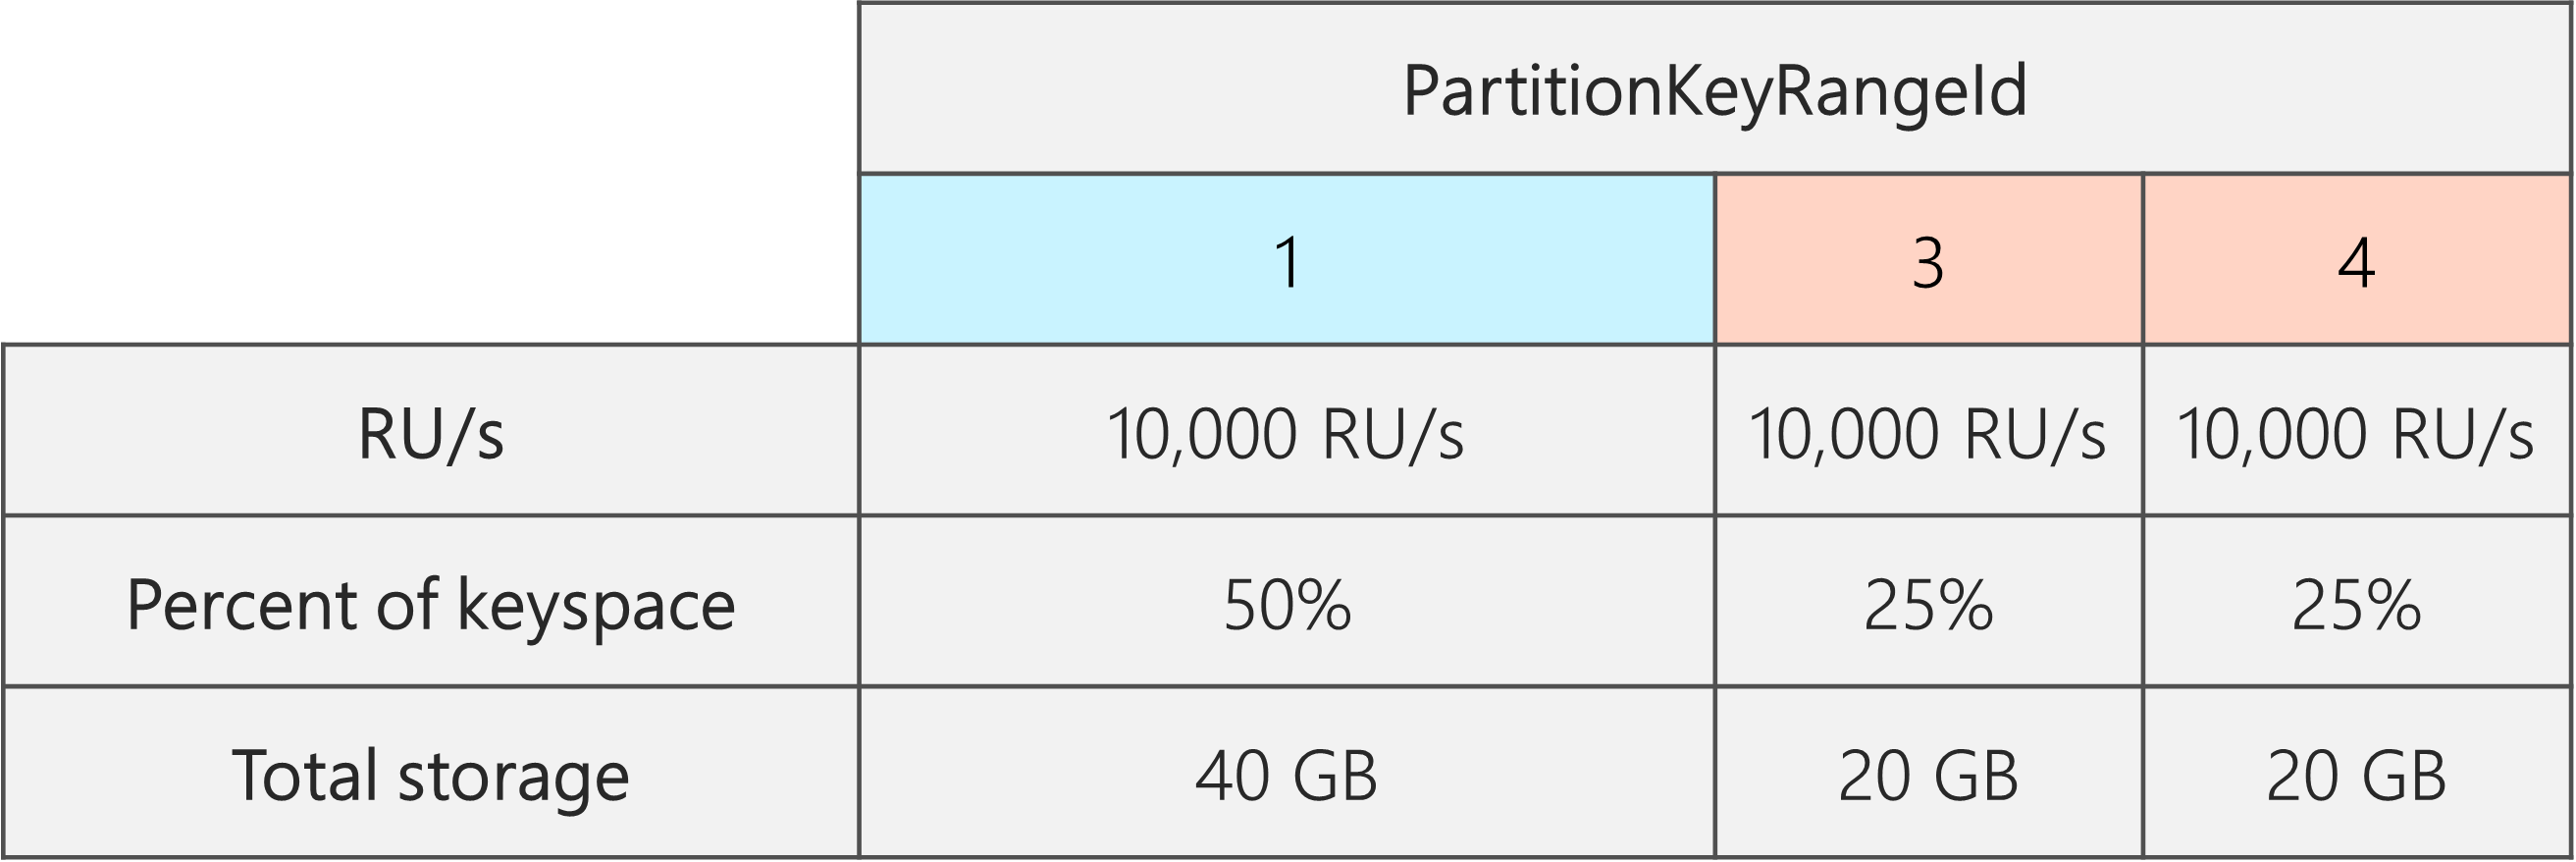 Efter delningen finns det 3 PartitionKeyRangeIds, var och en med 10 000 RU/s. Ett av PartitionKeyRangeIds har dock 50 % av det totala nyckelområdet (40 GB), medan två av PartitionKeyRangeIds har 25 % av det totala nyckelområdet (20 GB)